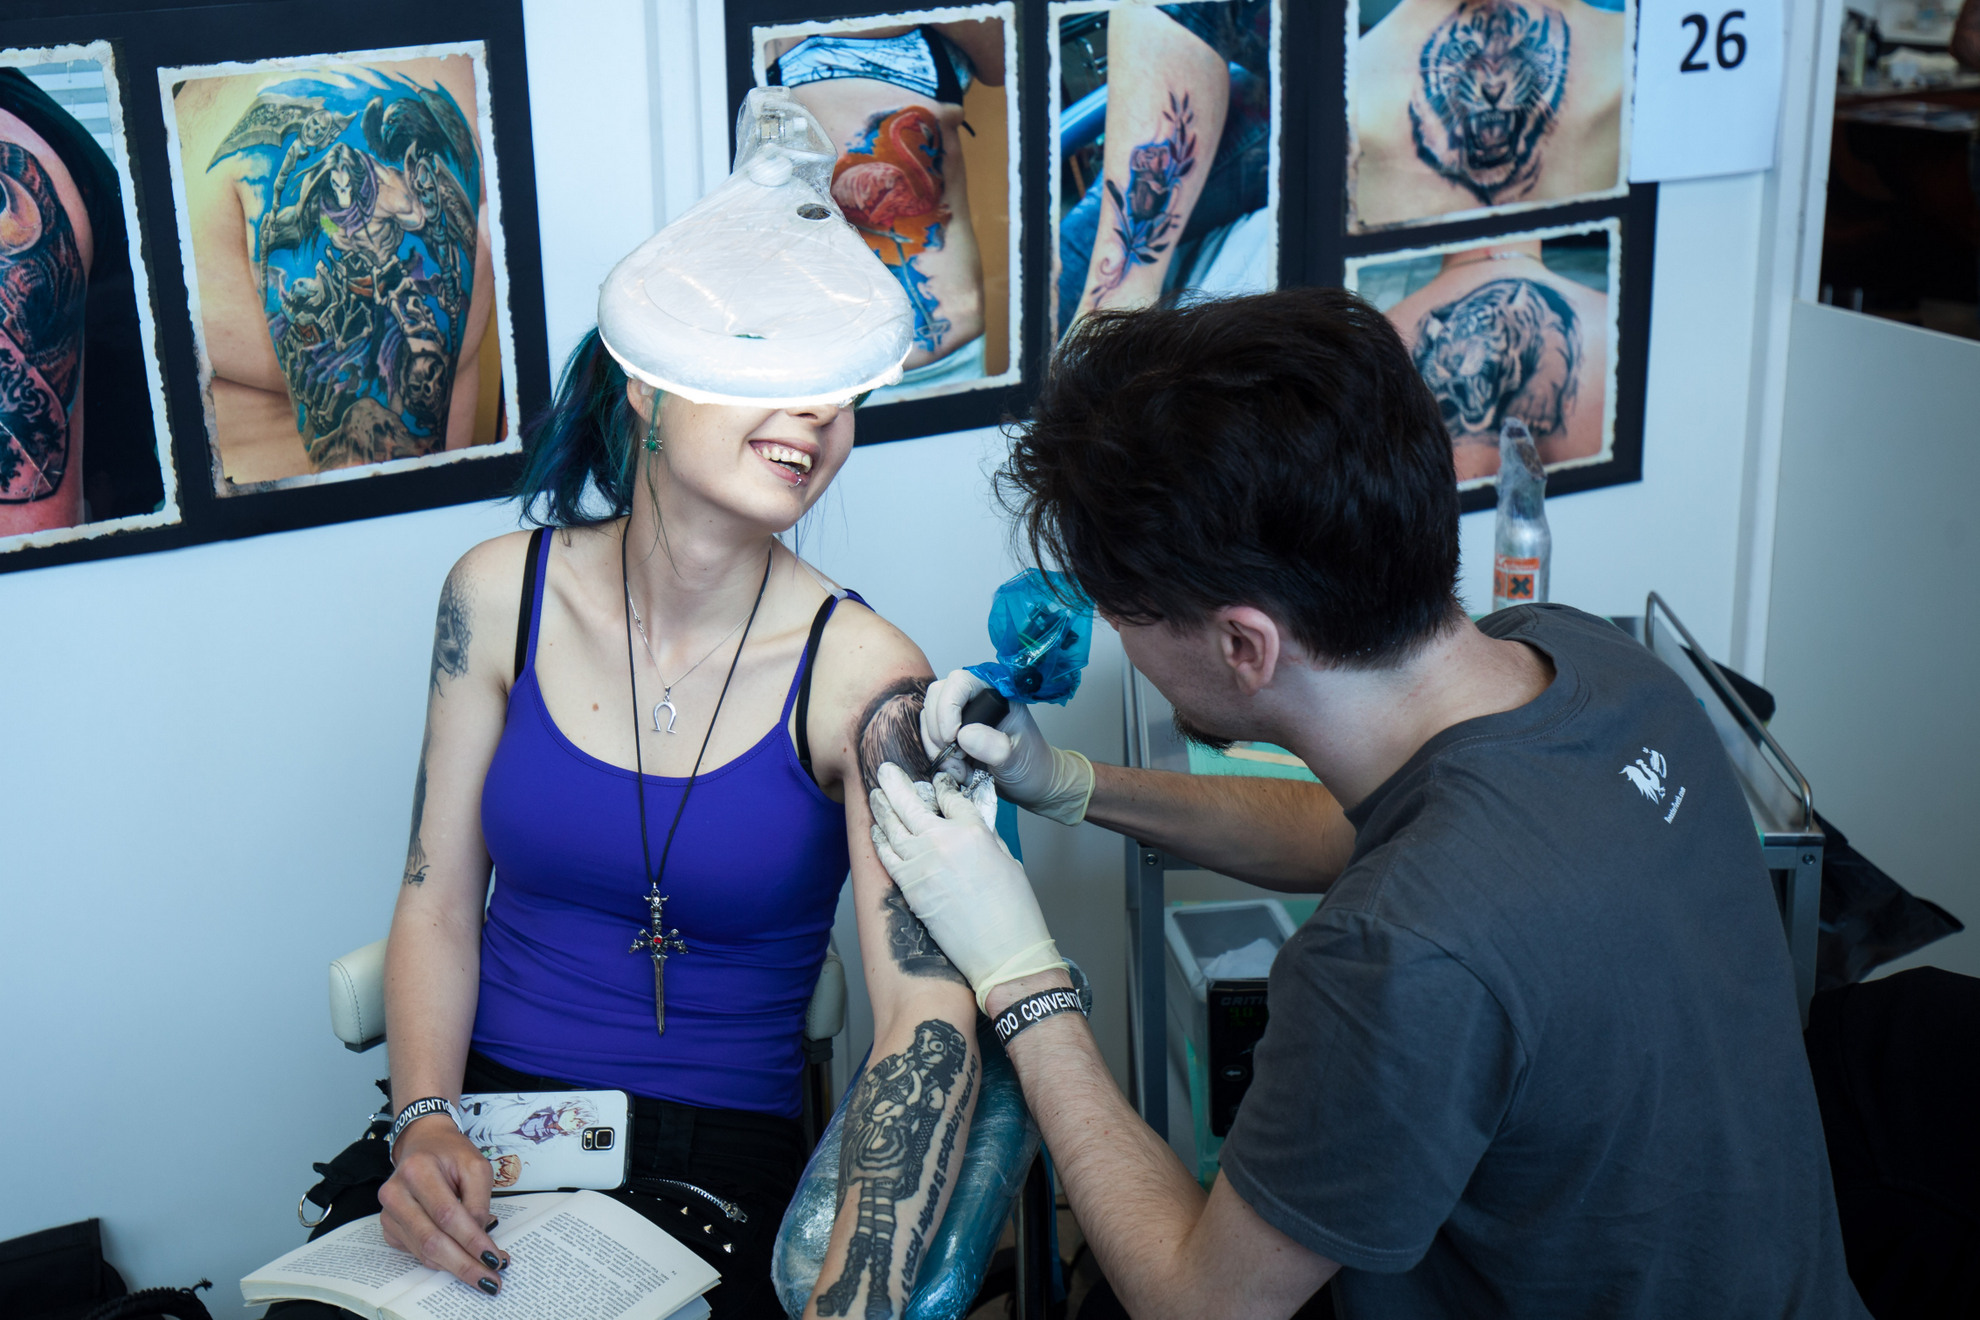 16. 04. 2016 Ljubljana, Gospodarsko razstavišče. Med 15. in 17. aprilom je v Ljubljani potekala 8. tradicionalna tattoo konvencija. Tetovatorski mojstri med delom.